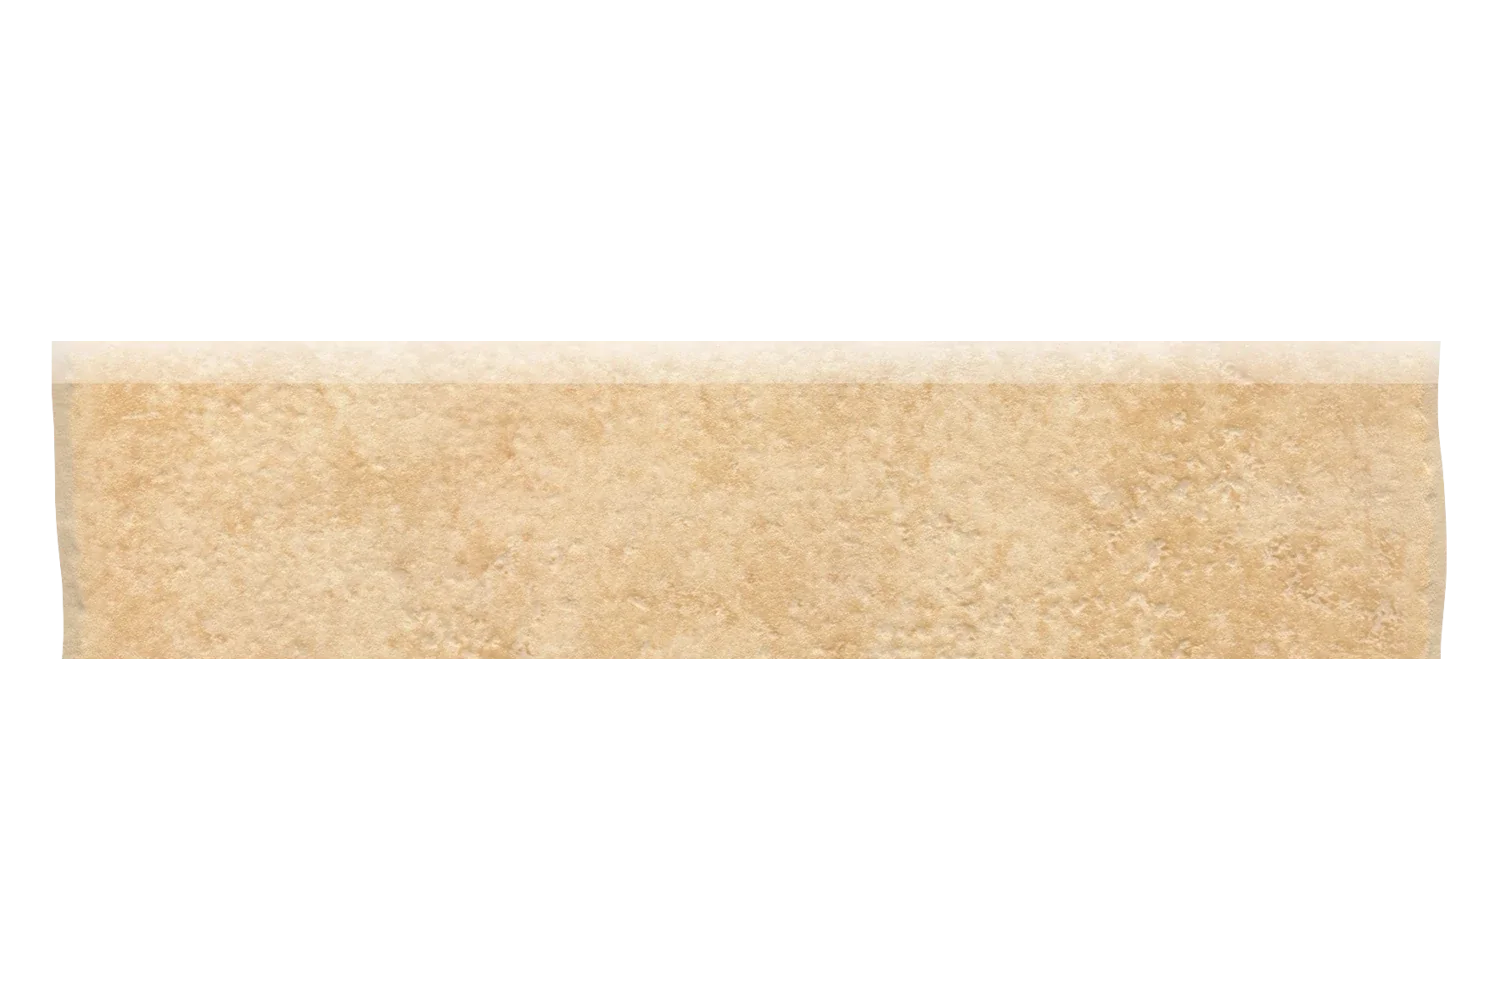 Sockel für Fliese Steinoptik Santa Fe Dourado sand beige